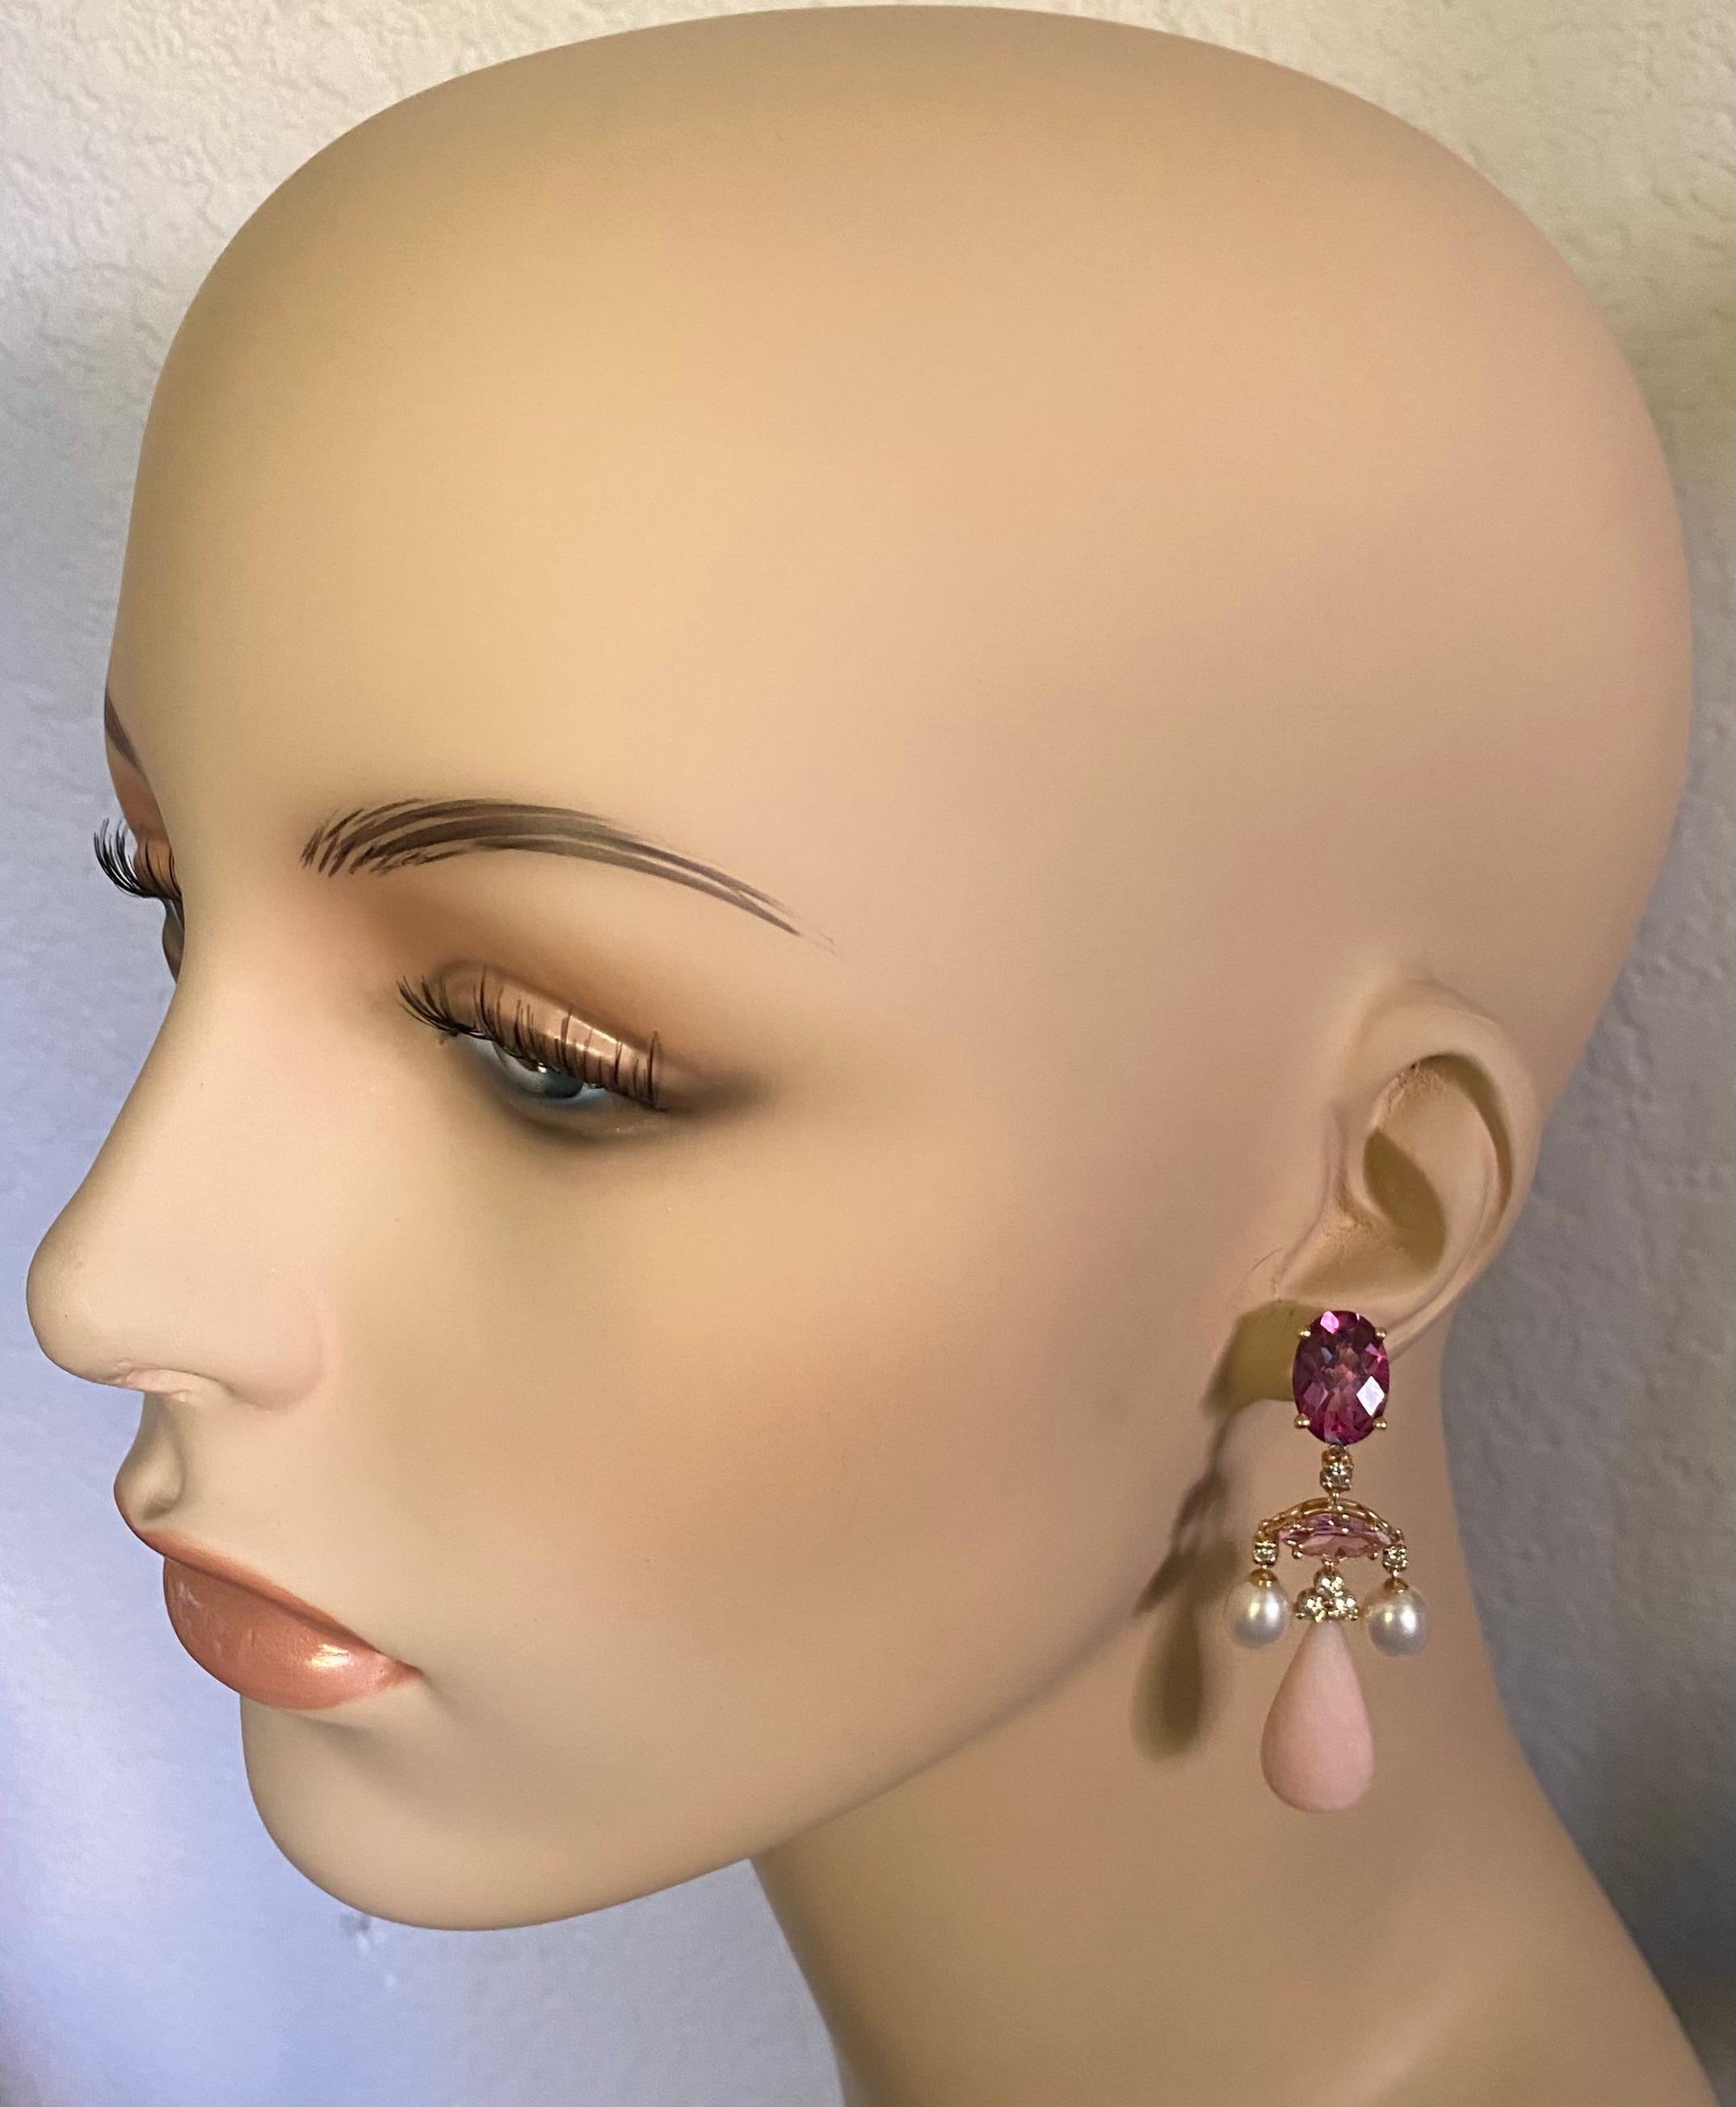 Des pierres précieuses roses sont mises en valeur dans ces élégantes boucles d'oreilles pendantes en forme de chandelier.  Une topaze rose foncé (origine : Brésil) de forme ovale et taillée en damier couronne la composition.  Une tourmaline rose